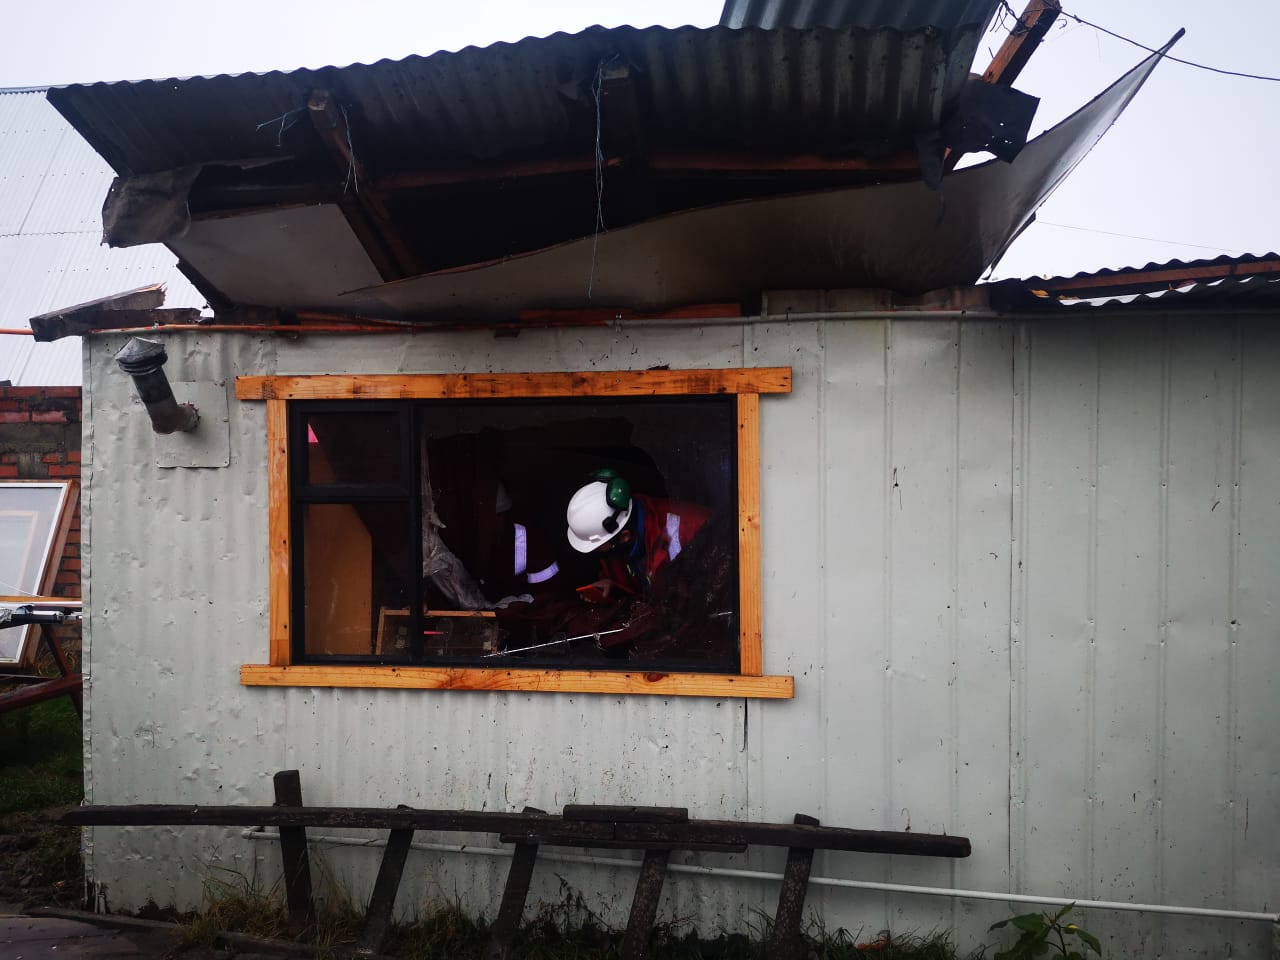 Explosión de gas y amago de incendio causó graves daños en inmueble en Puerto Natales: tres personas lesionadas de gravedad